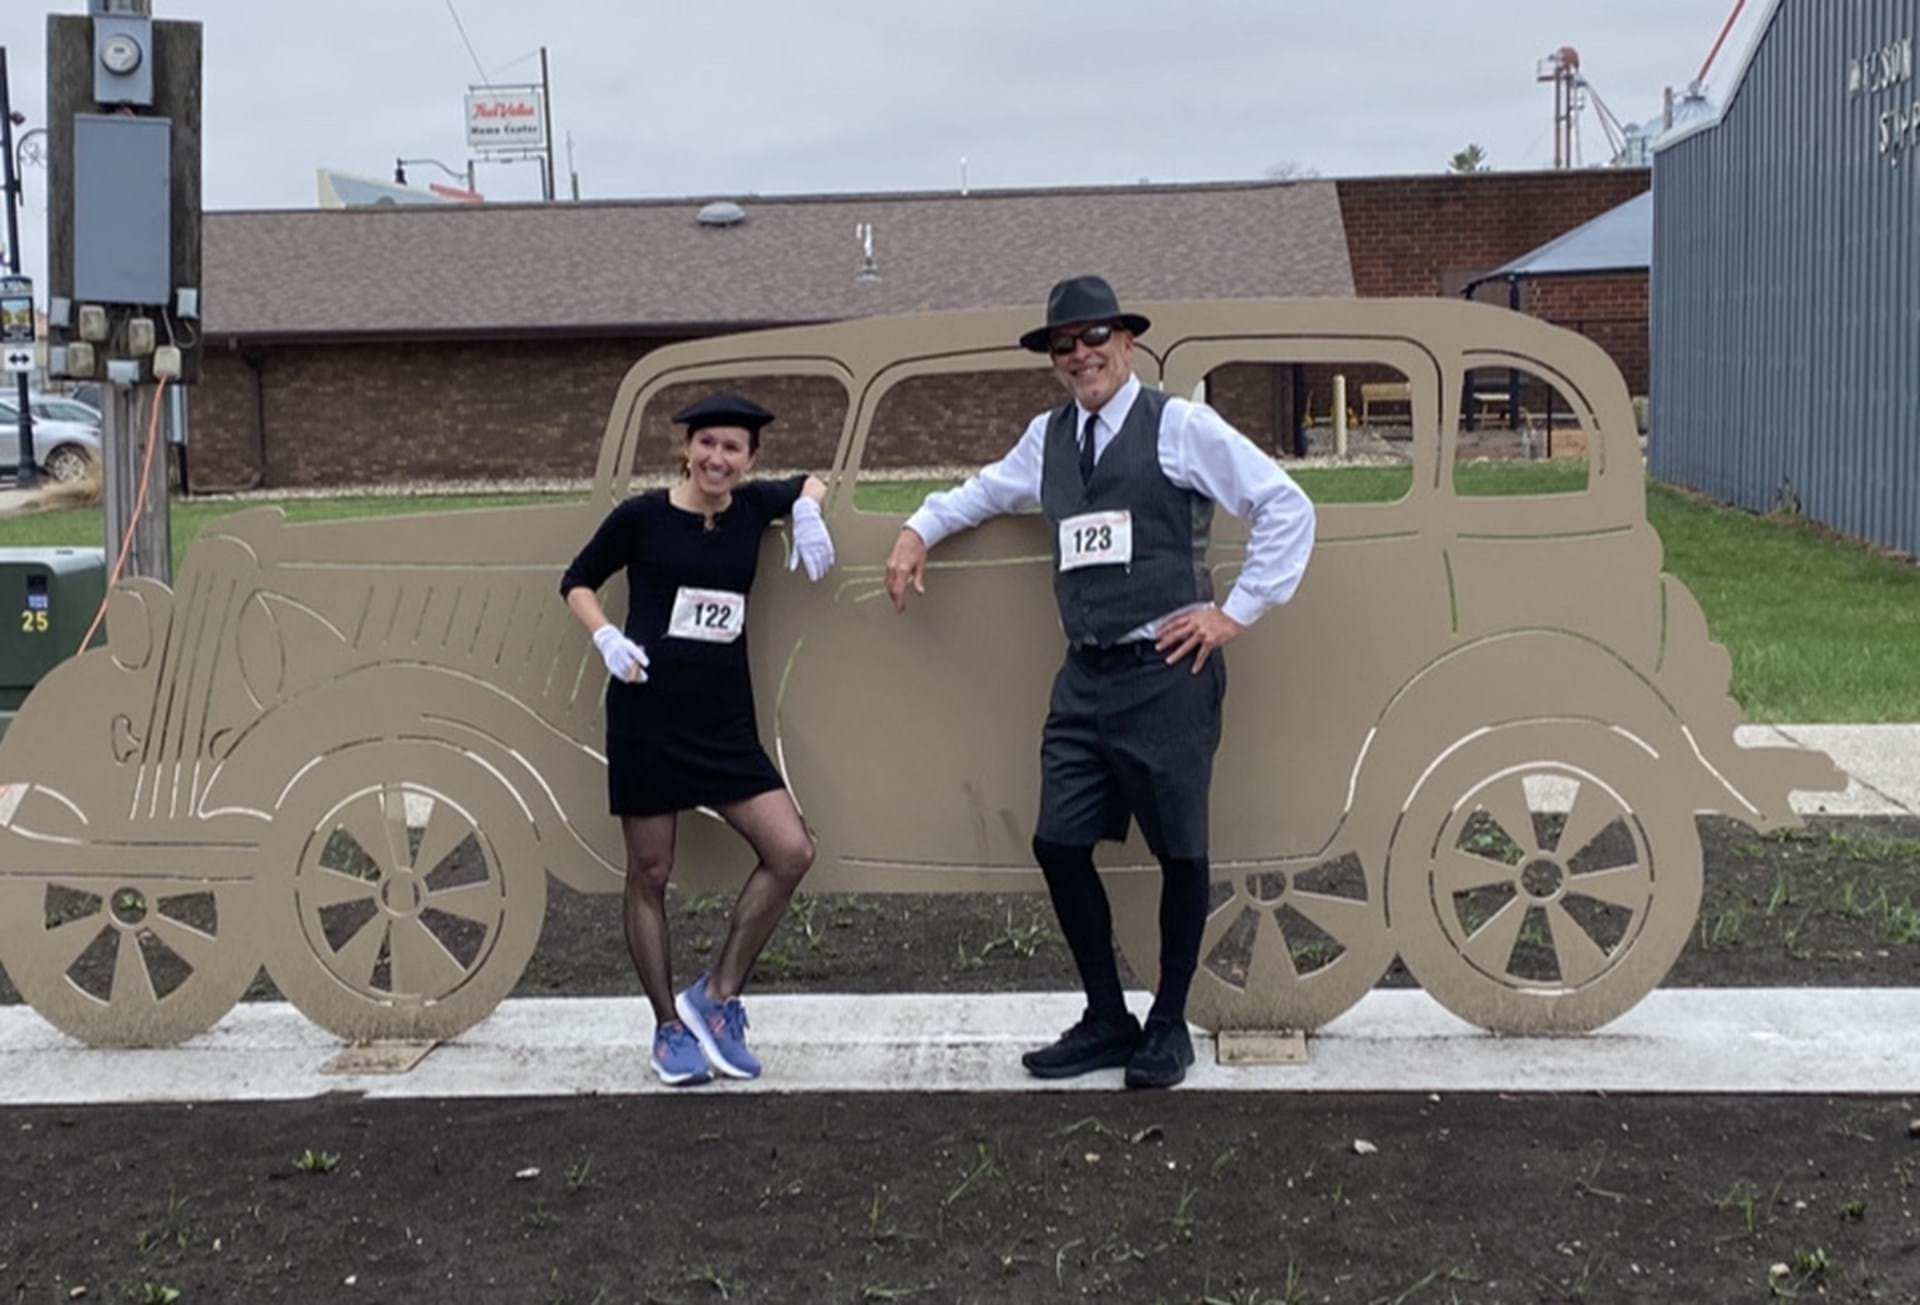 Bonnie & Clyde runners